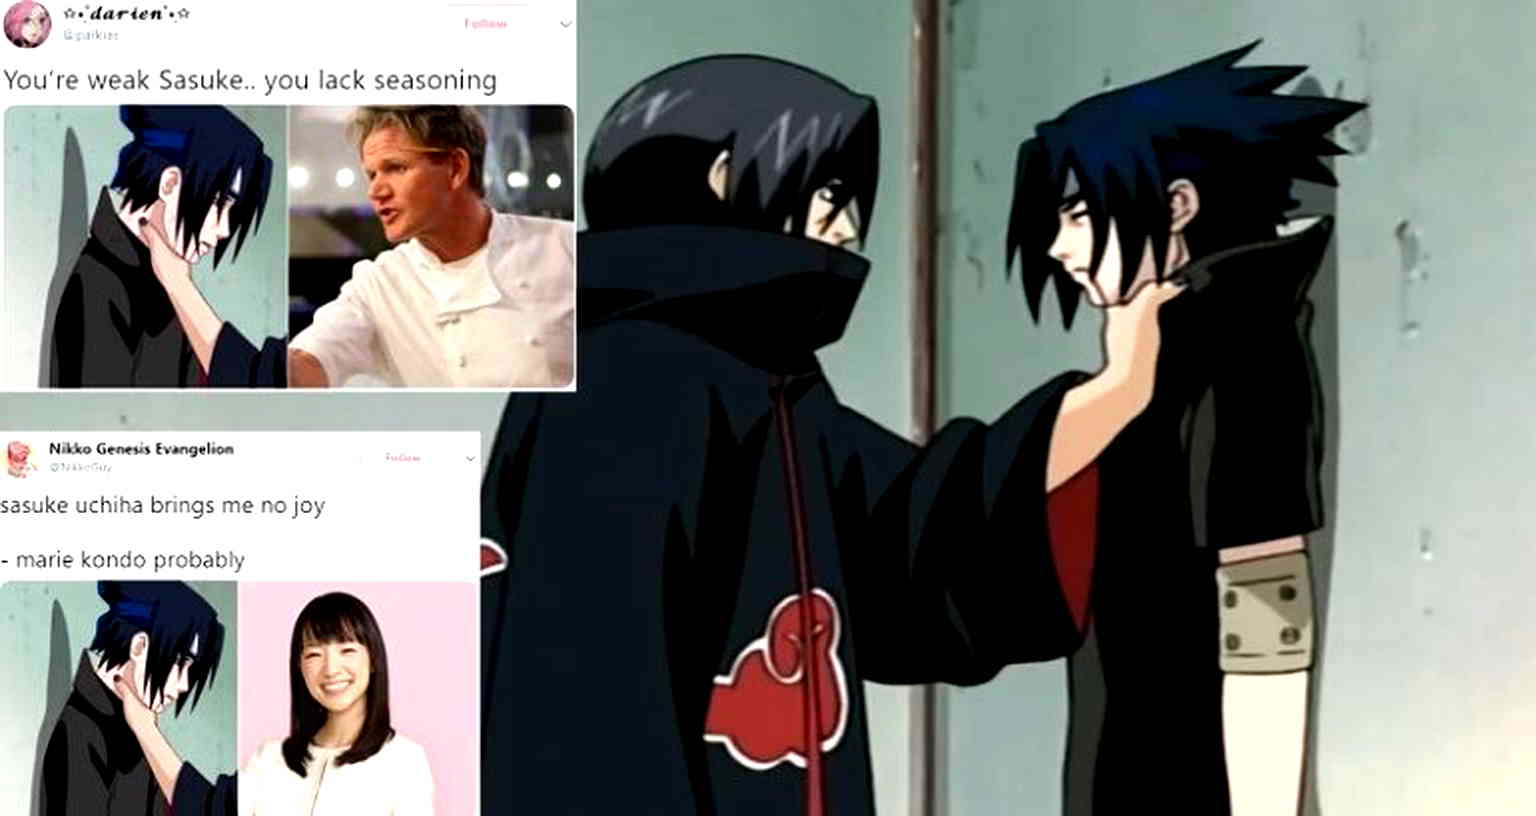 Everybody Seems to Enjoy Choking Sasuke in Latest Viral Twitter Meme